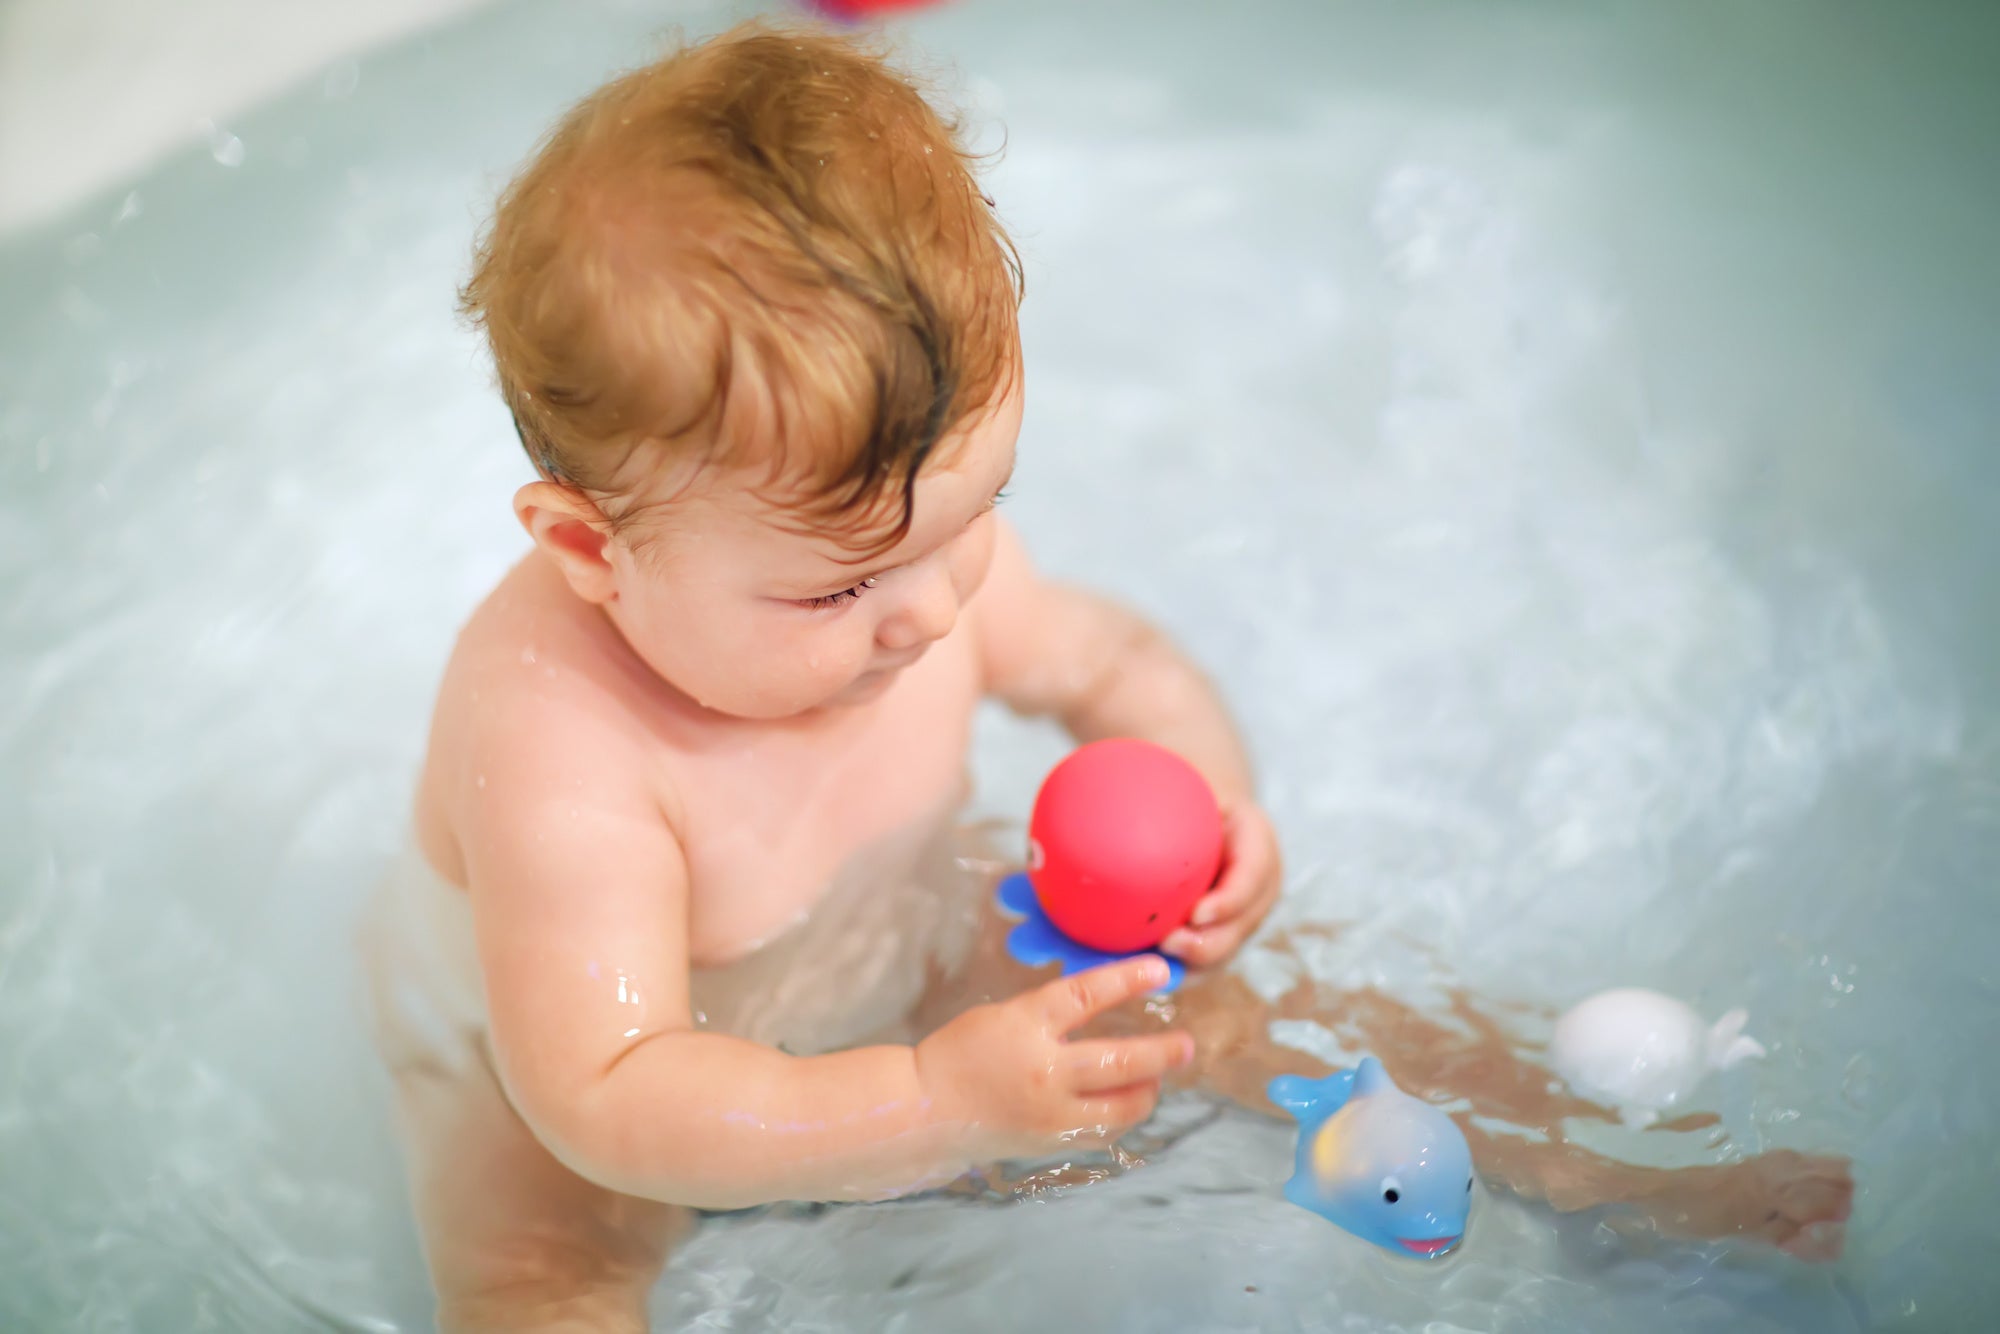 Comment nettoyer les jouets de bain? Désinfection des jouets